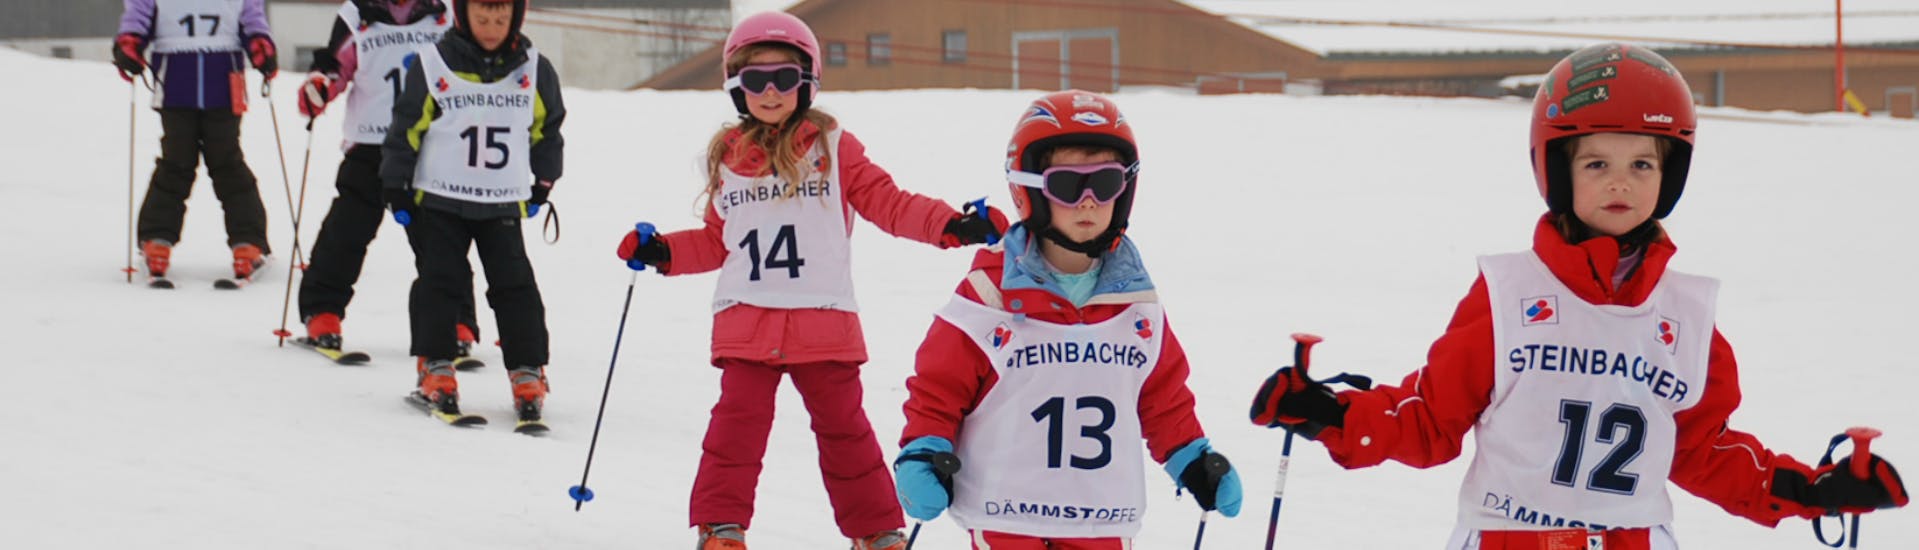 Skilessen “Kids Club” (4-16 j.) voor Beginners met Skischule Ski Total Kirchdorf.